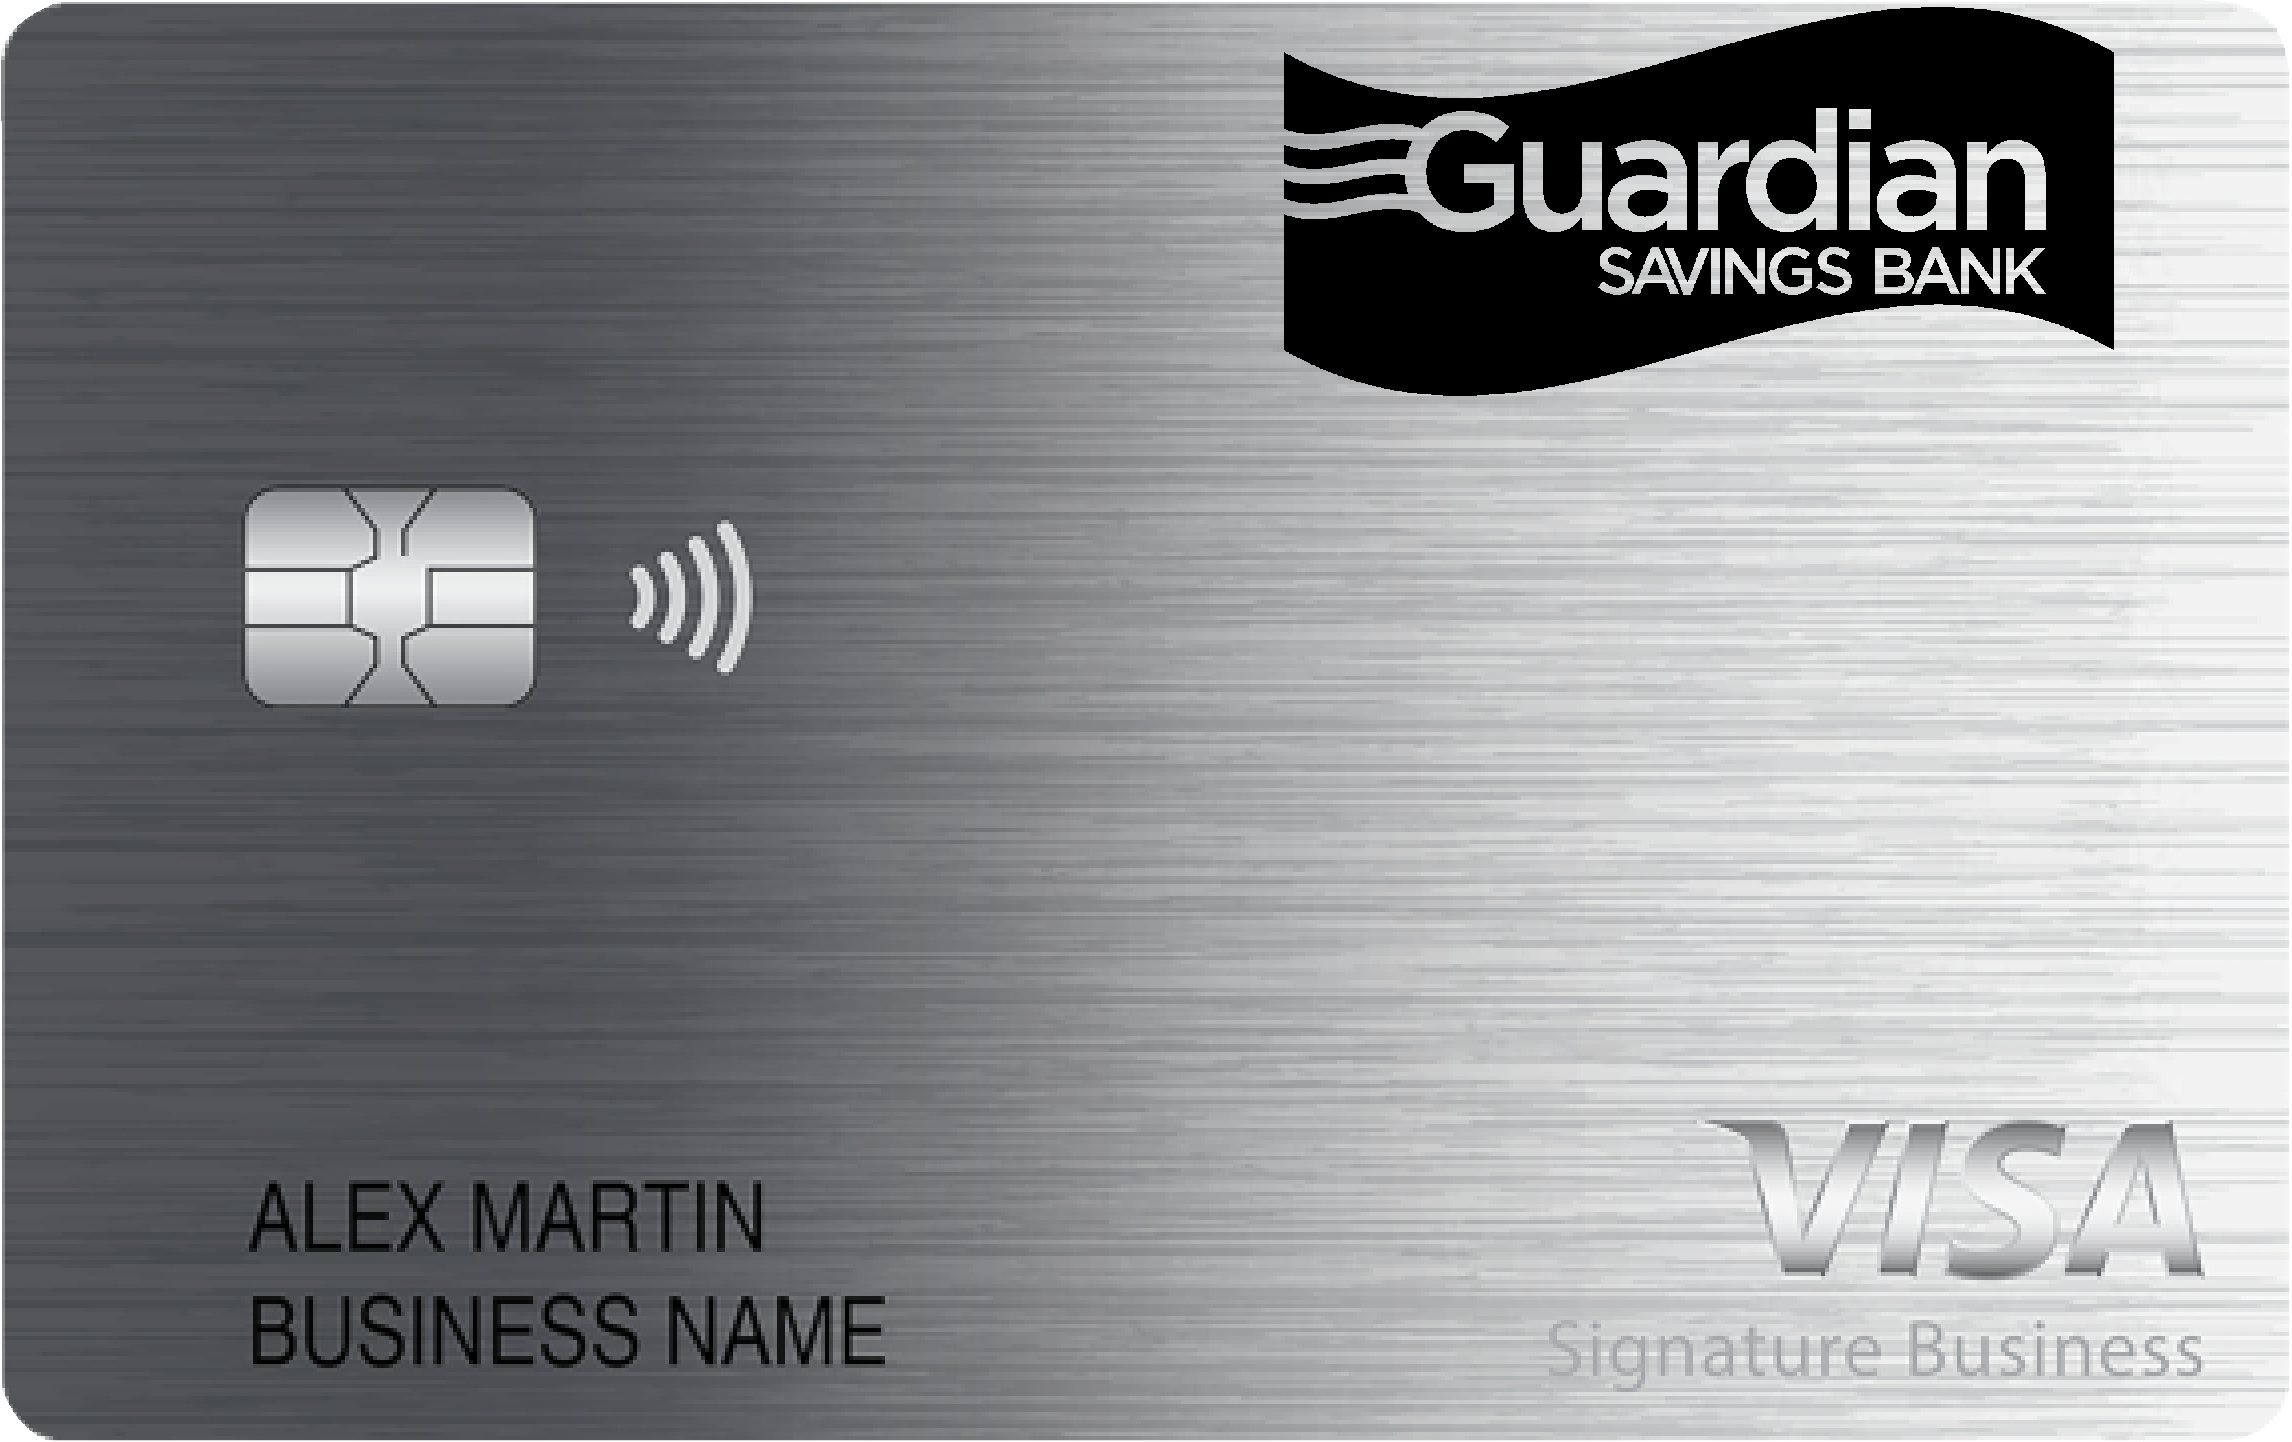 Guardian Savings Bank Smart Business Rewards Card